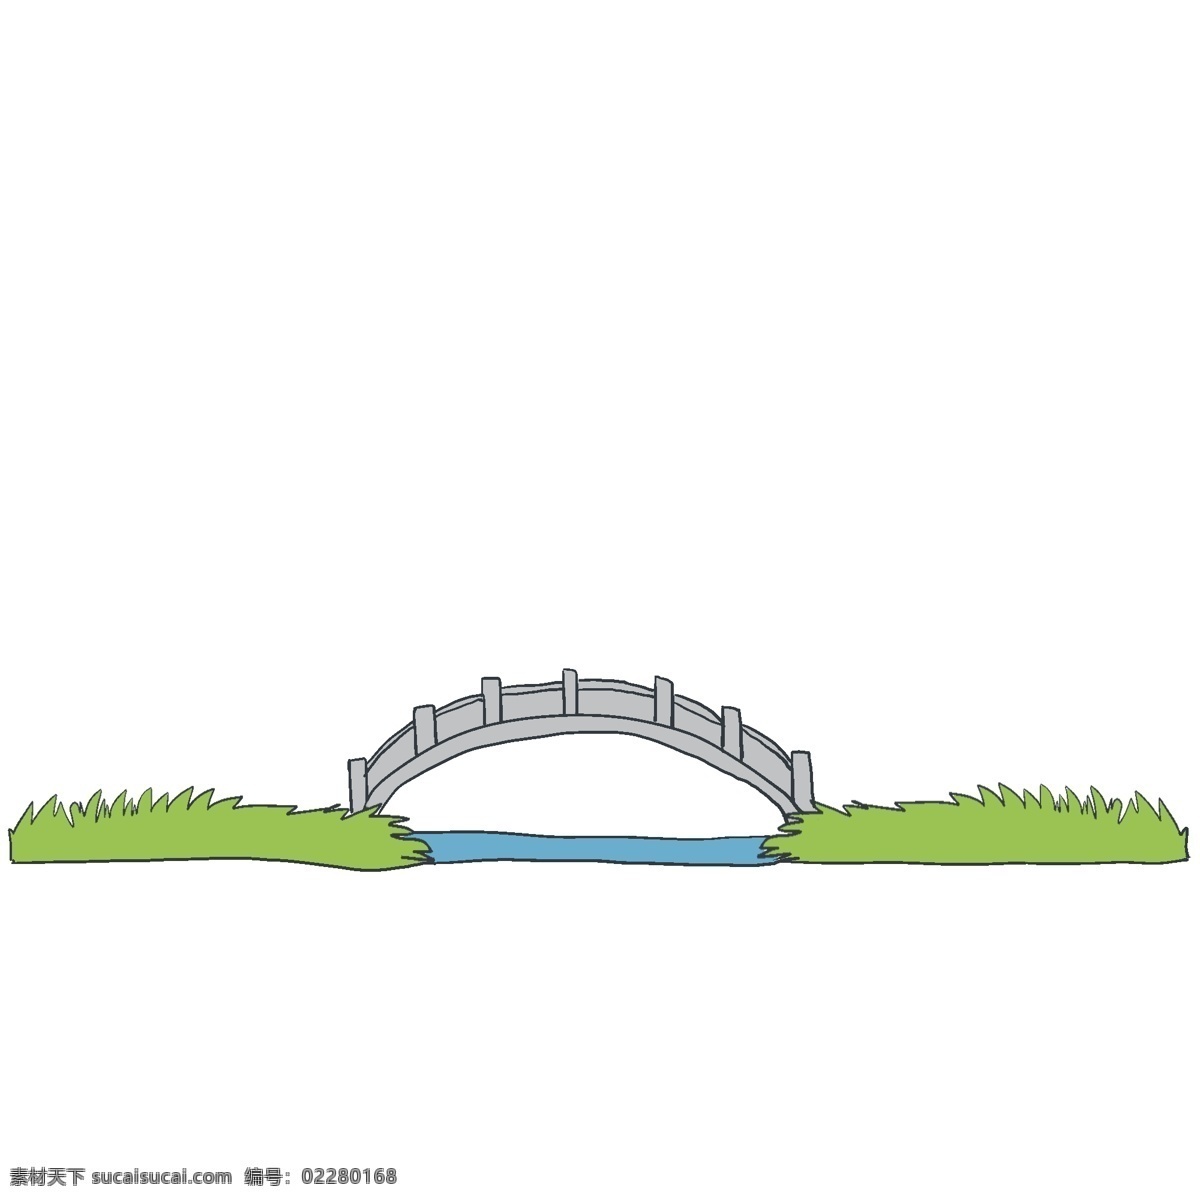 手绘 大桥 分割线 插画 卡通插画 手绘插画 长桥 可爱 美丽 漂亮 蓝水 灰色的长桥 大桥分割线